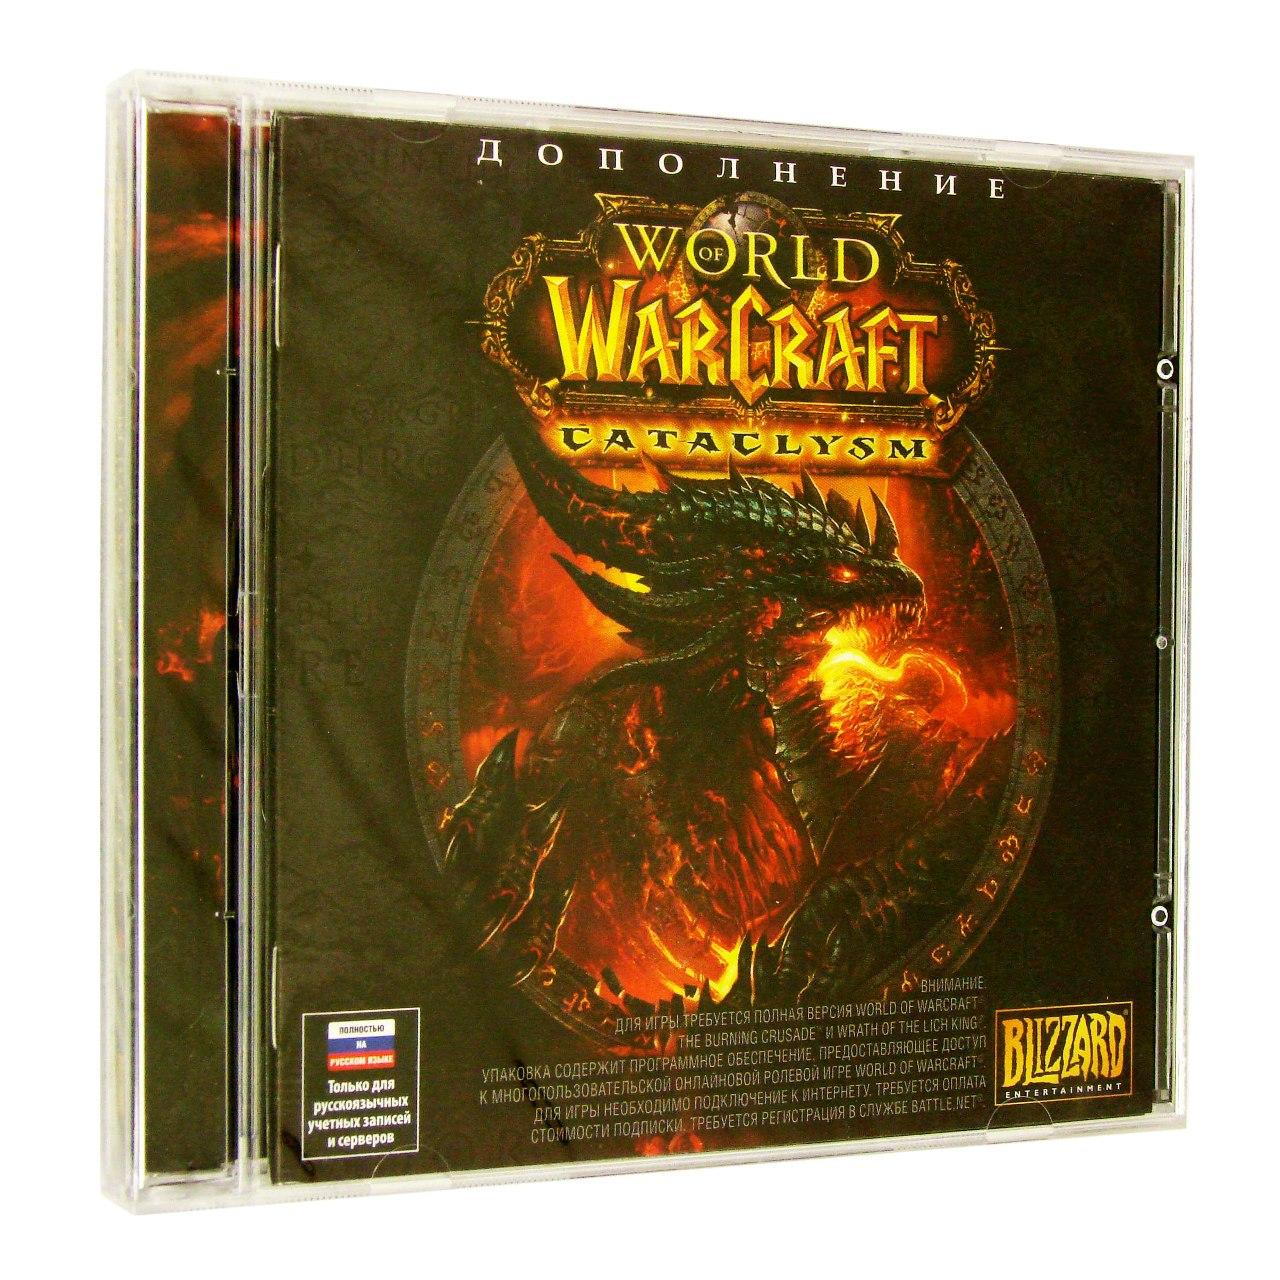 Компьютерный компакт-диск World of Warcraft: Cataclysm (дополнение) (ПК), фирма "Софтклаб", 1DVD